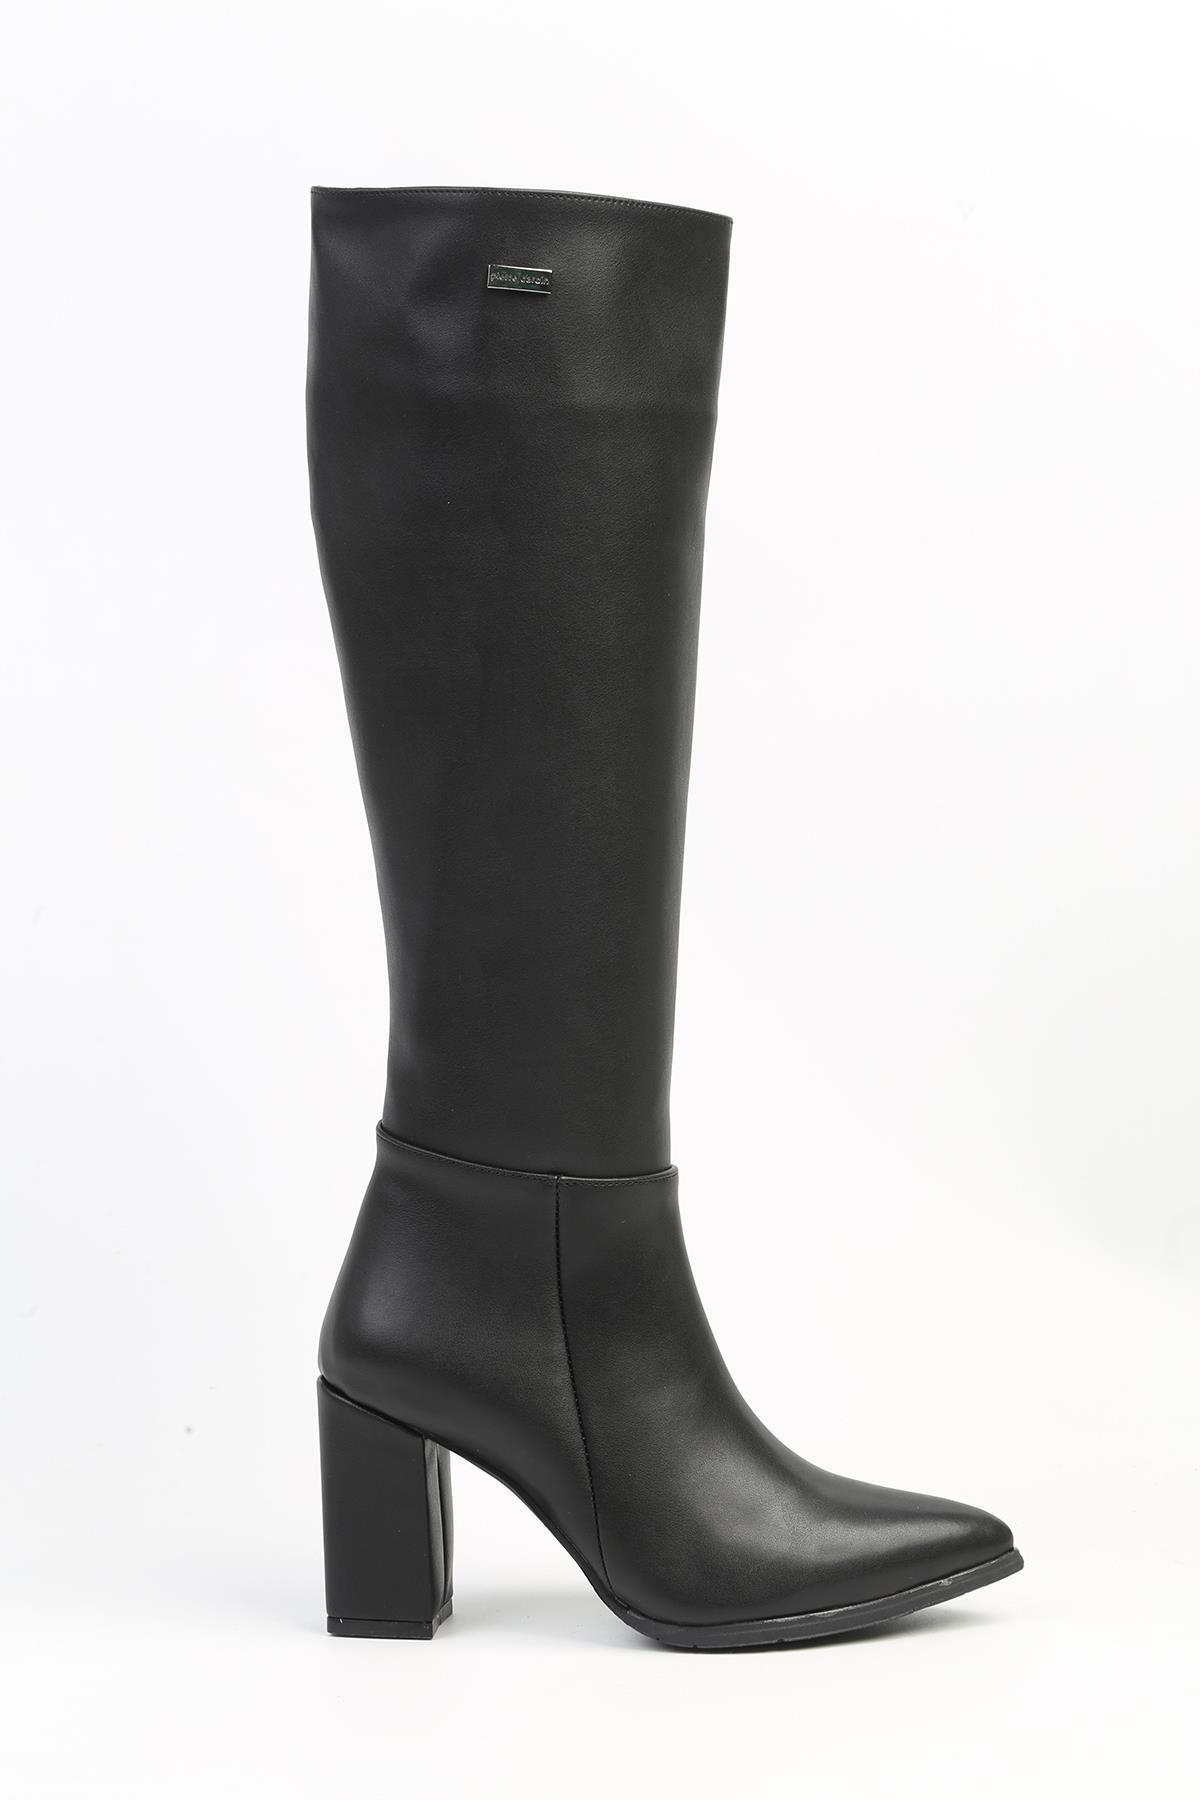 Pierre Cardin ® | PC-52427-3076 Siyah Cilt - Kadın Topuklu Çizme